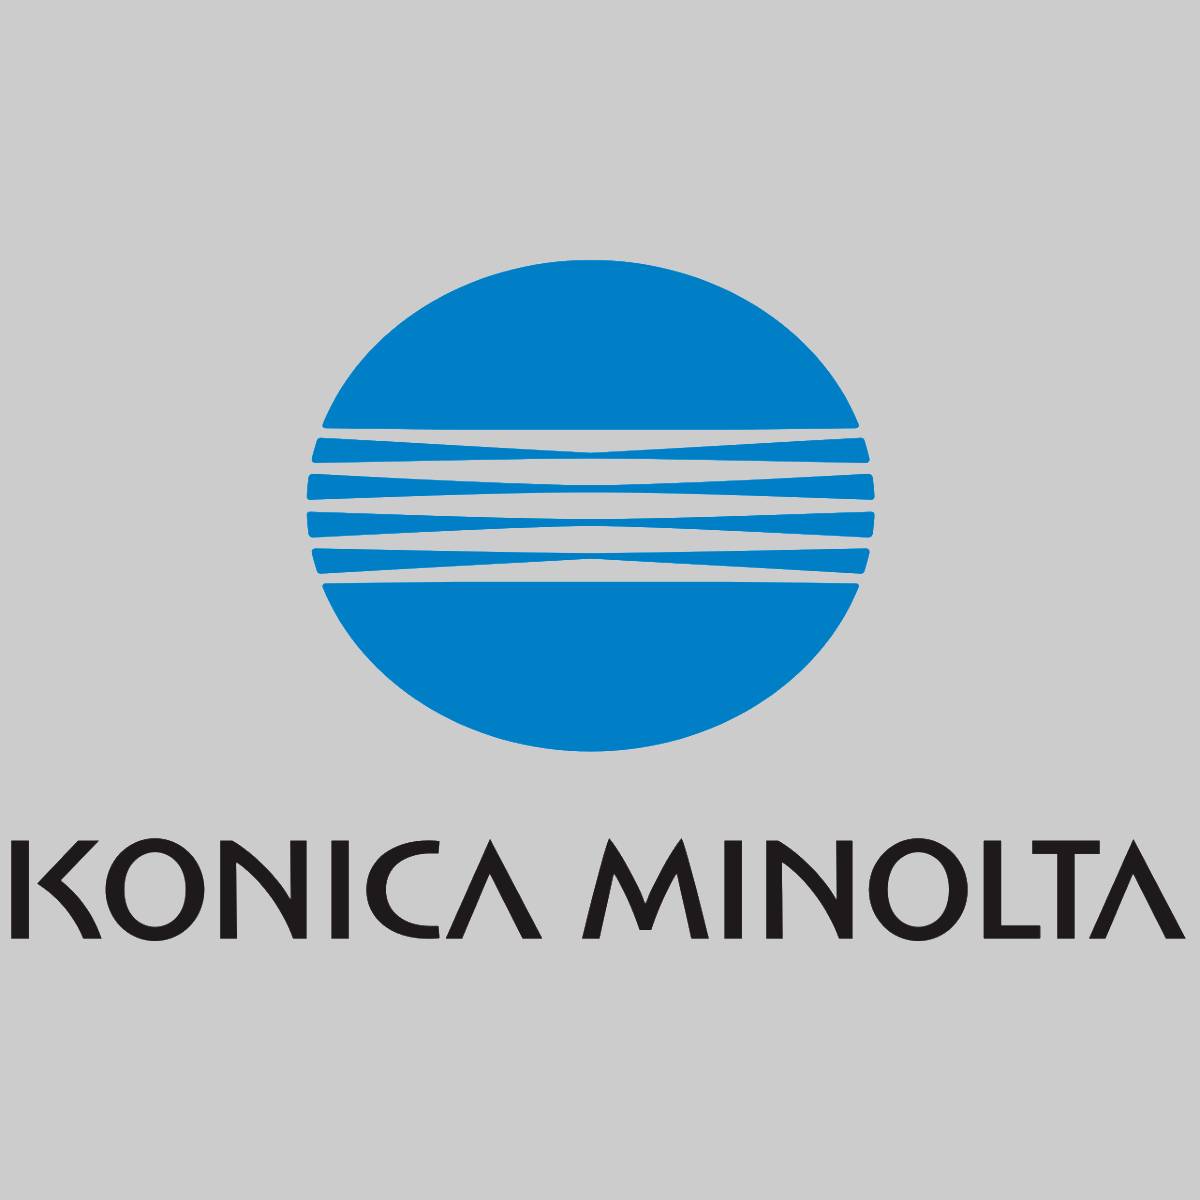 "Original Konica Minolta TN321 Toner Cyan A33K45G for Bizhub C224 284 364 NEW